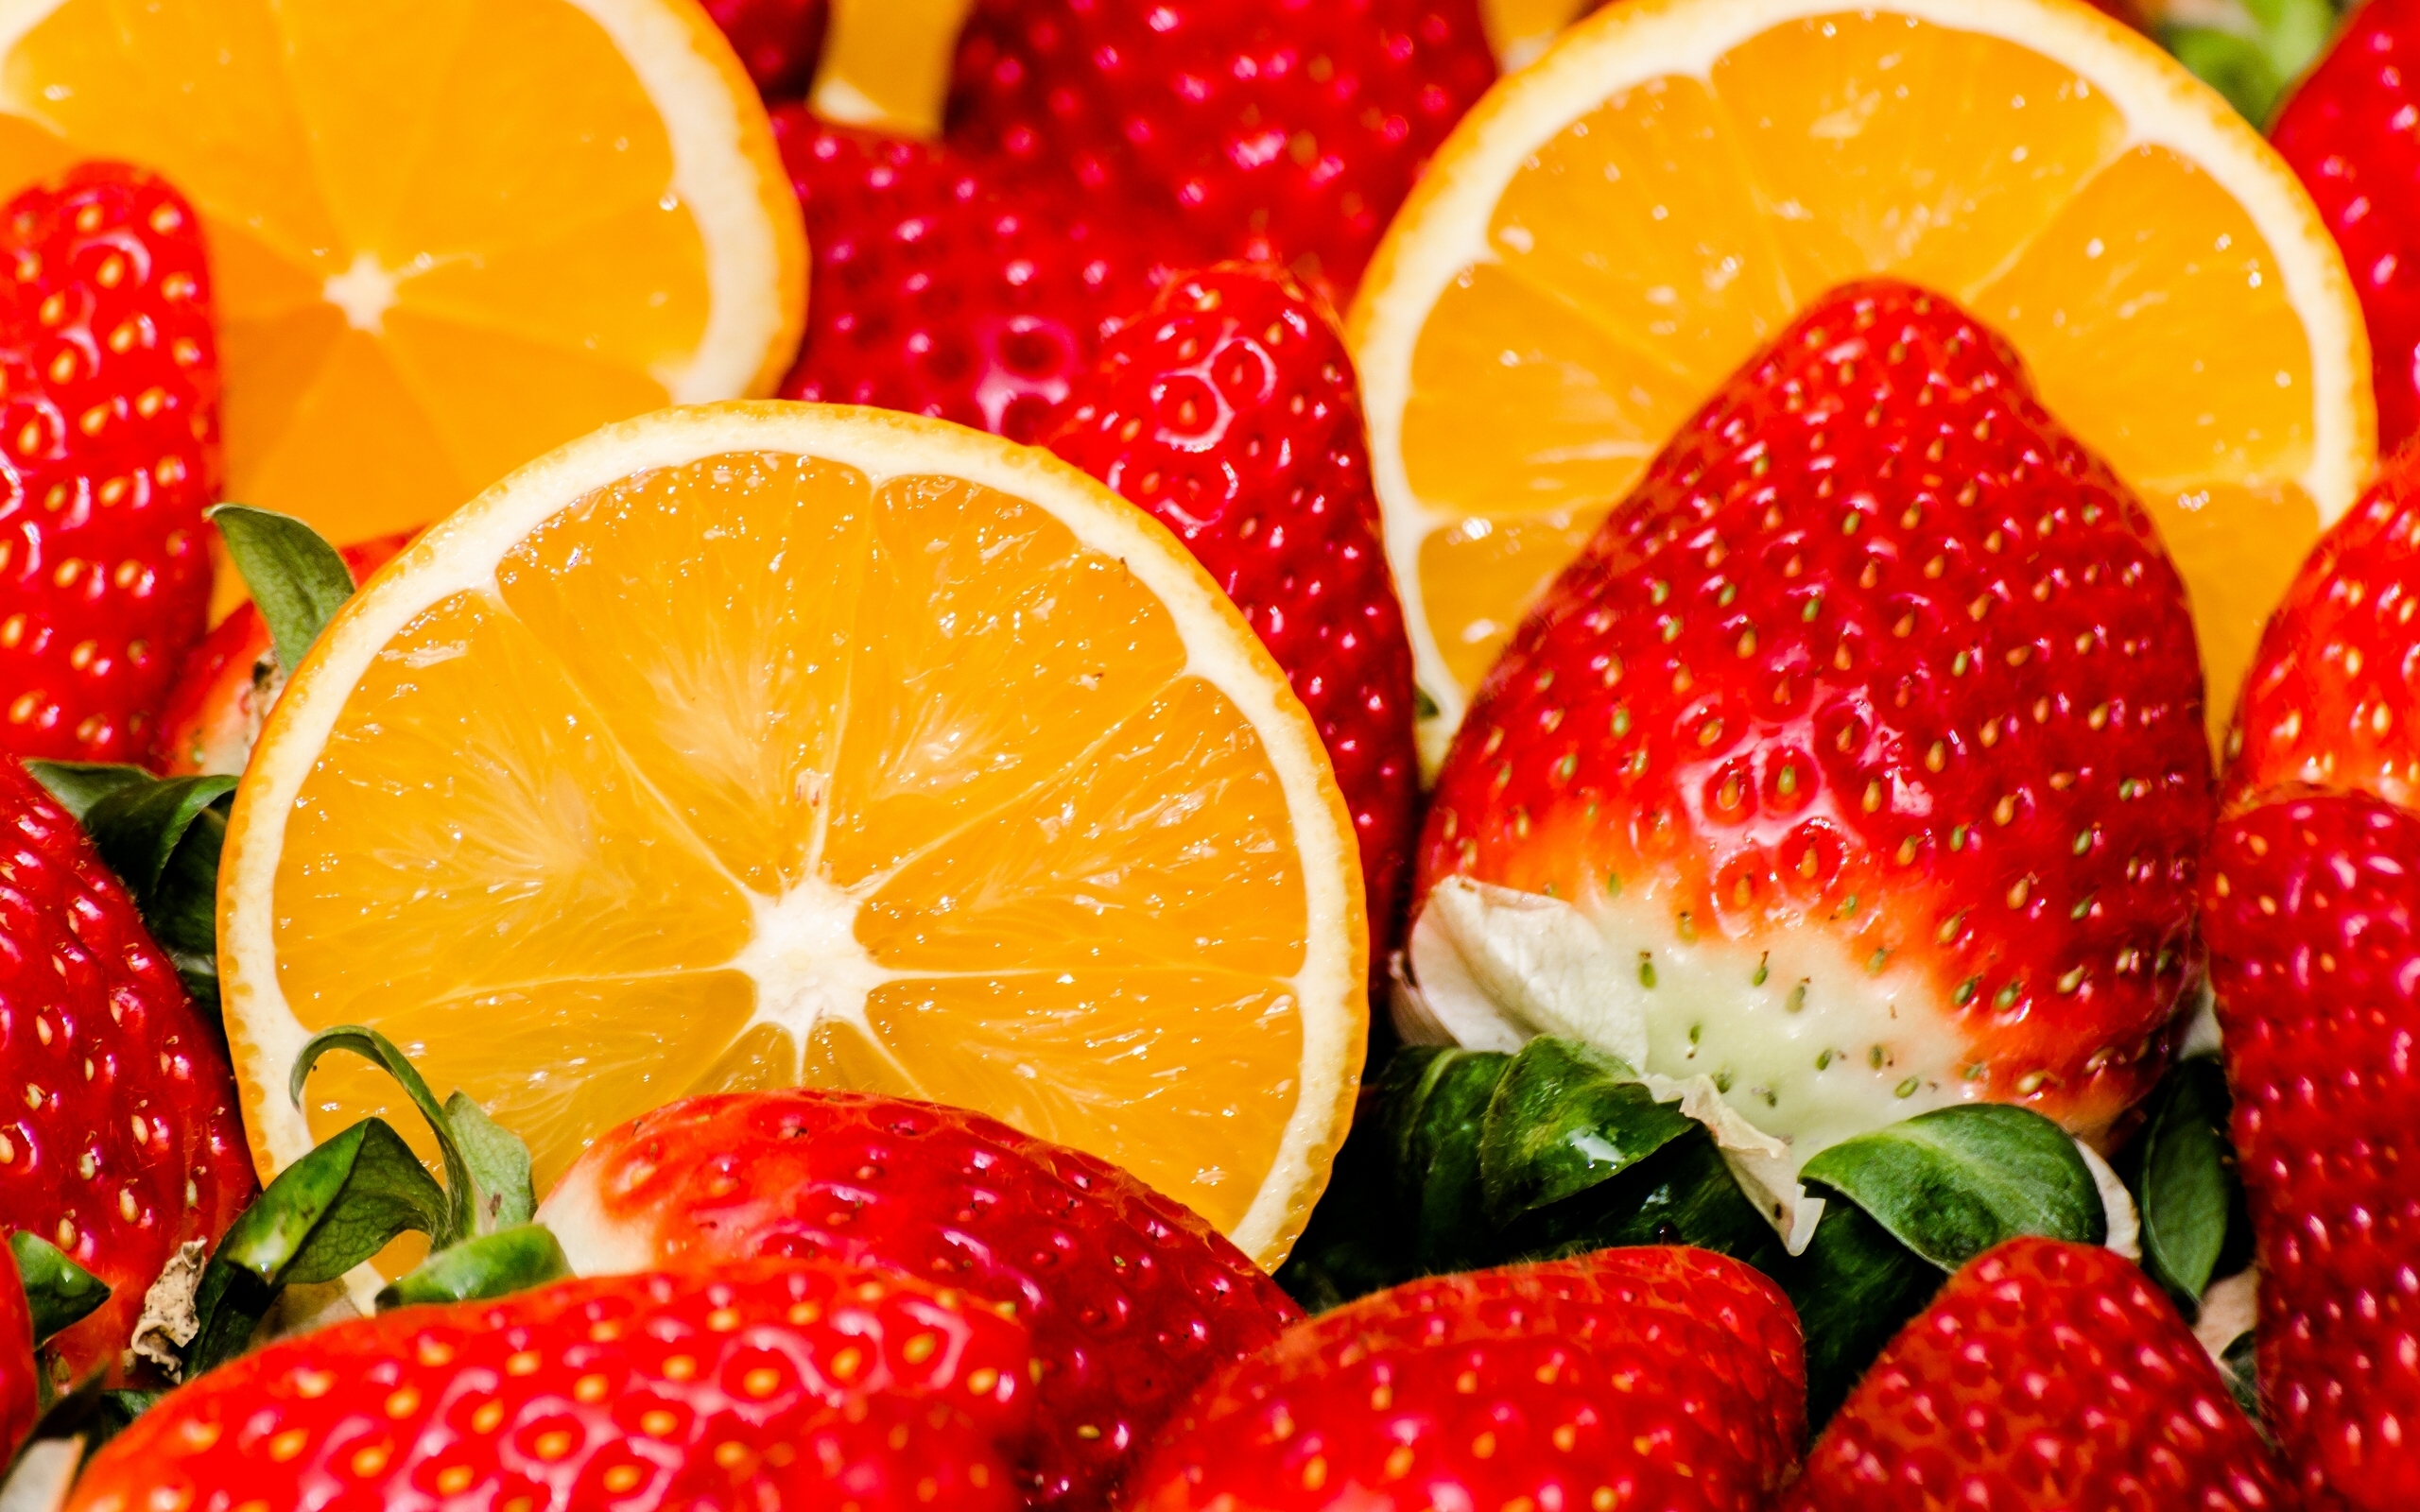 клубника, апельсины, еда, ягоды, фрукты, полезная еда, яркие обои, Strawberry, oranges, food, berries, fruit, healthy food, bright wallpaper